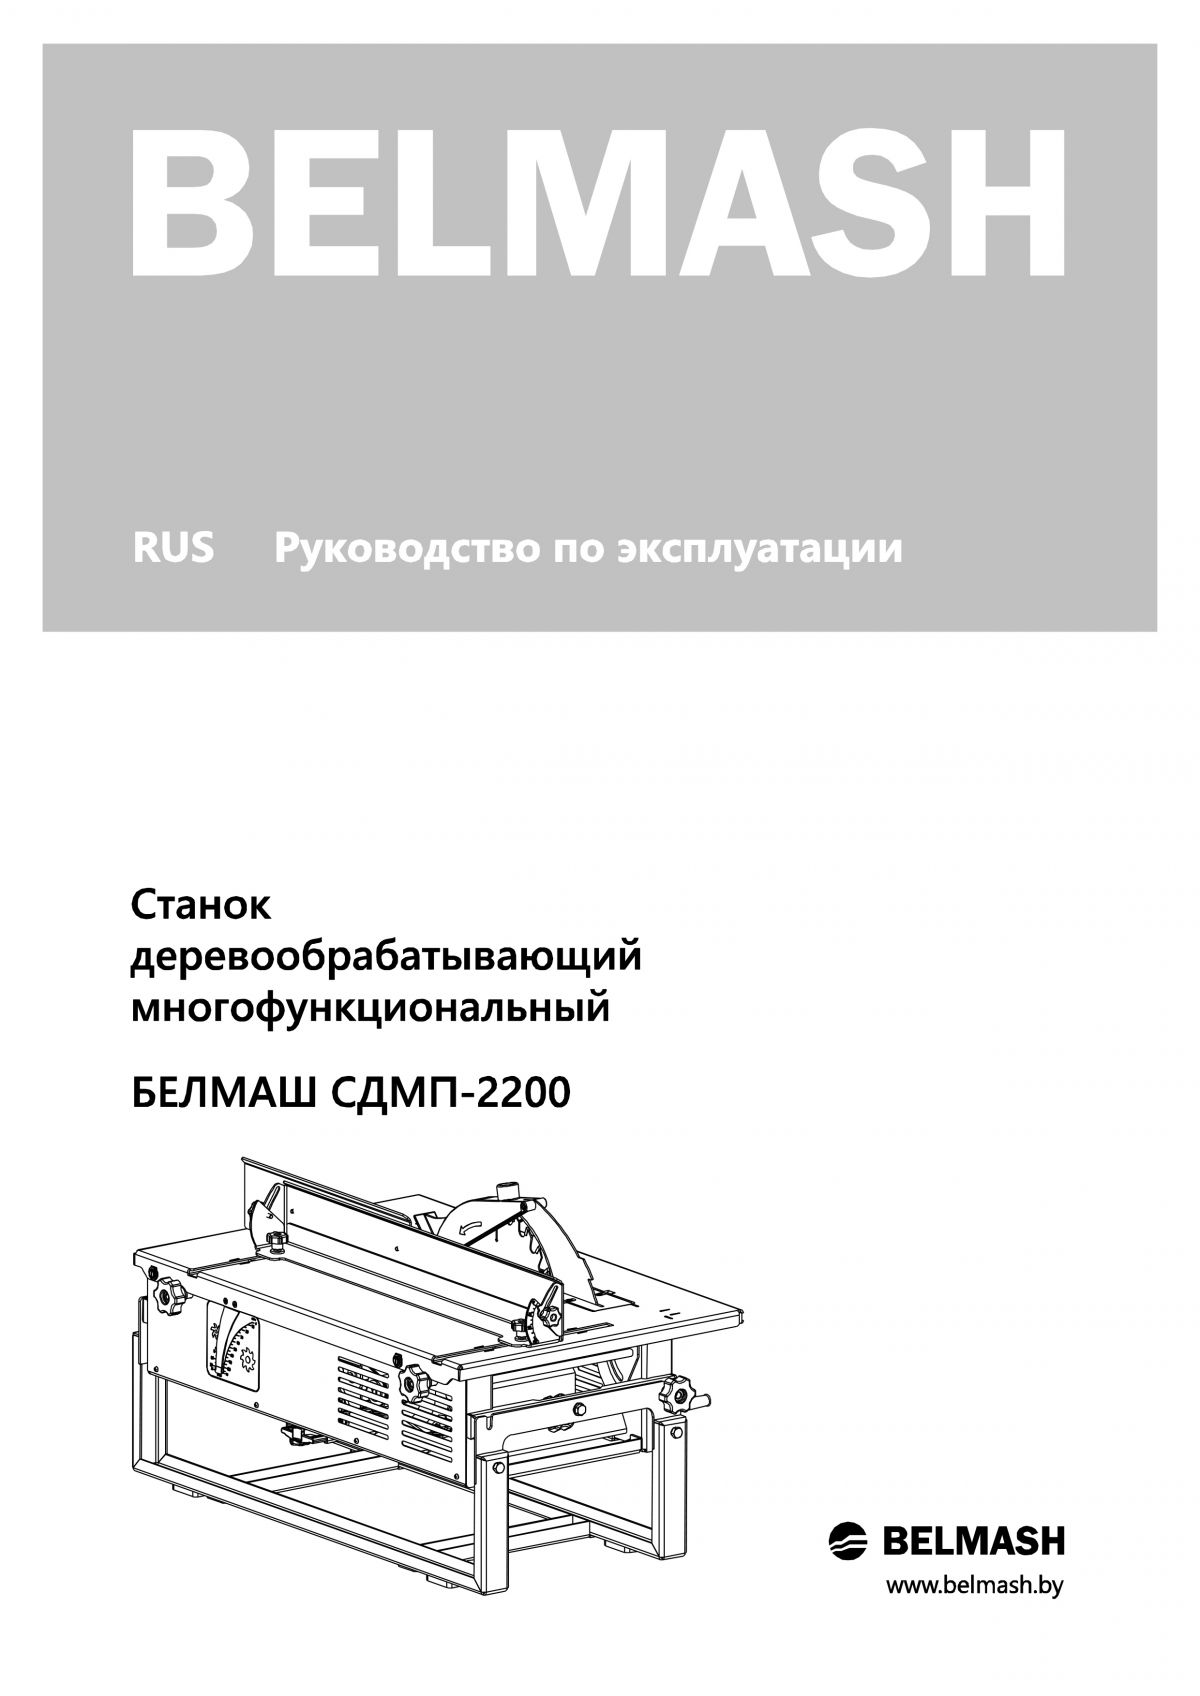 Руководство по эксплуатации для станка СДМП-2200 (русский язык)